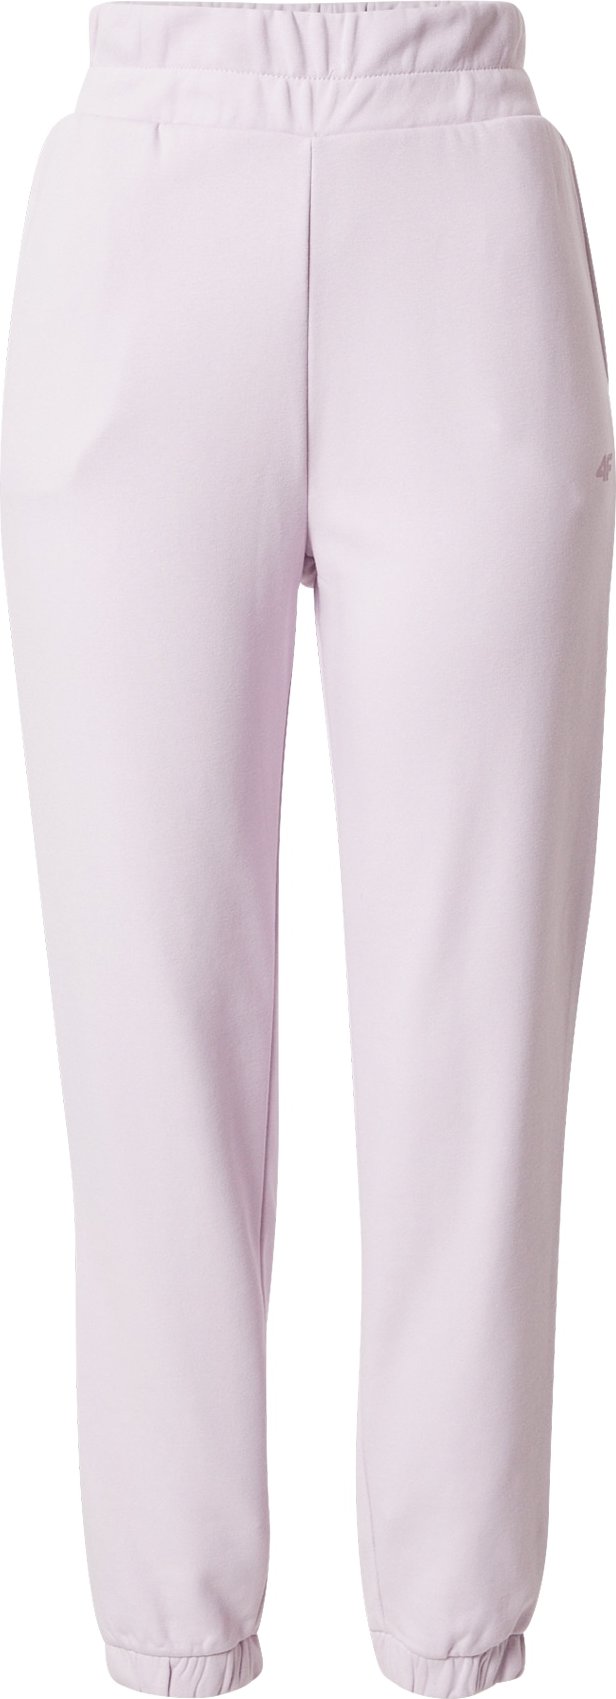 4F Sportovní kalhoty pastelová fialová